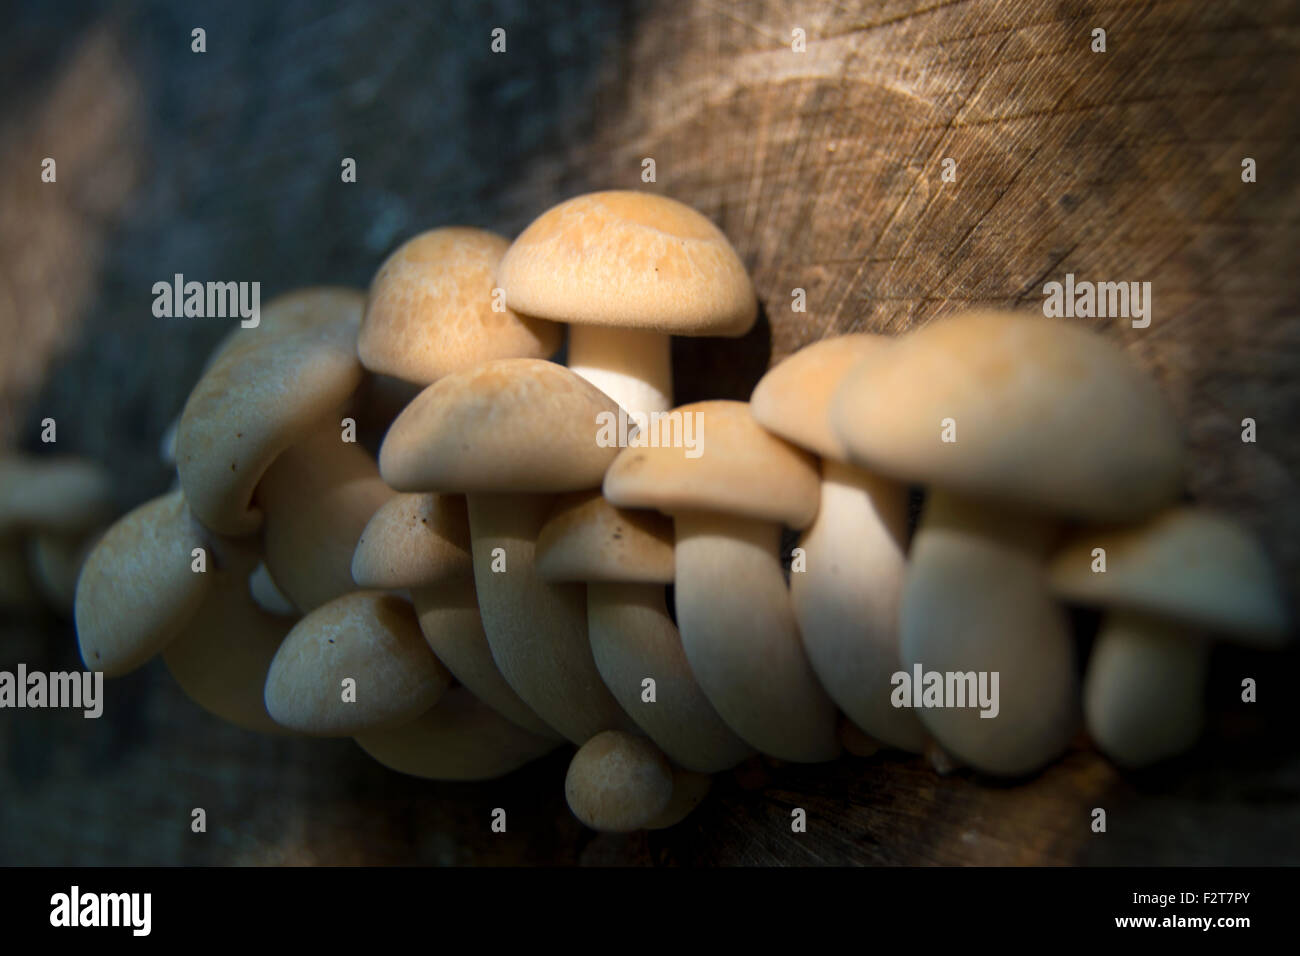 Les champignons, fruit d'un arbre en décomposition Banque D'Images